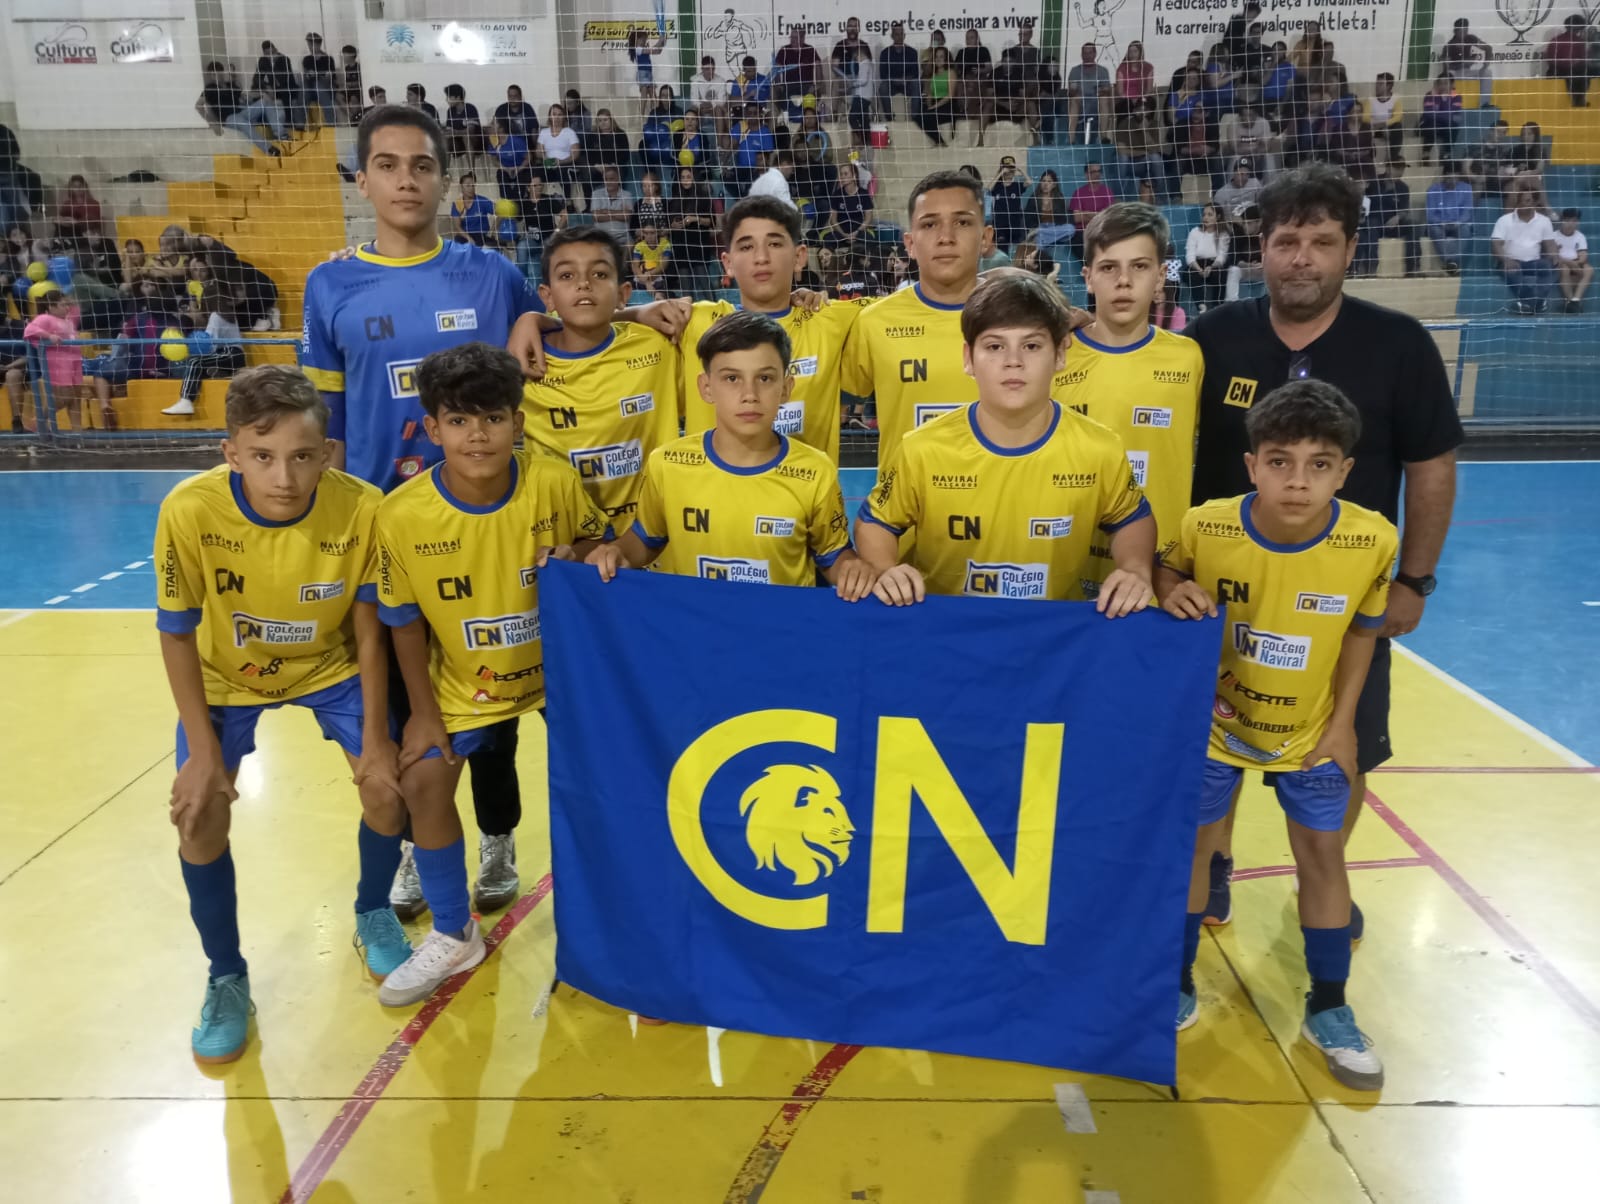 Jogos Escolares de Naviraí define equipes campeãs do futsal masculino e vôlei feminino 12 a 14 anos